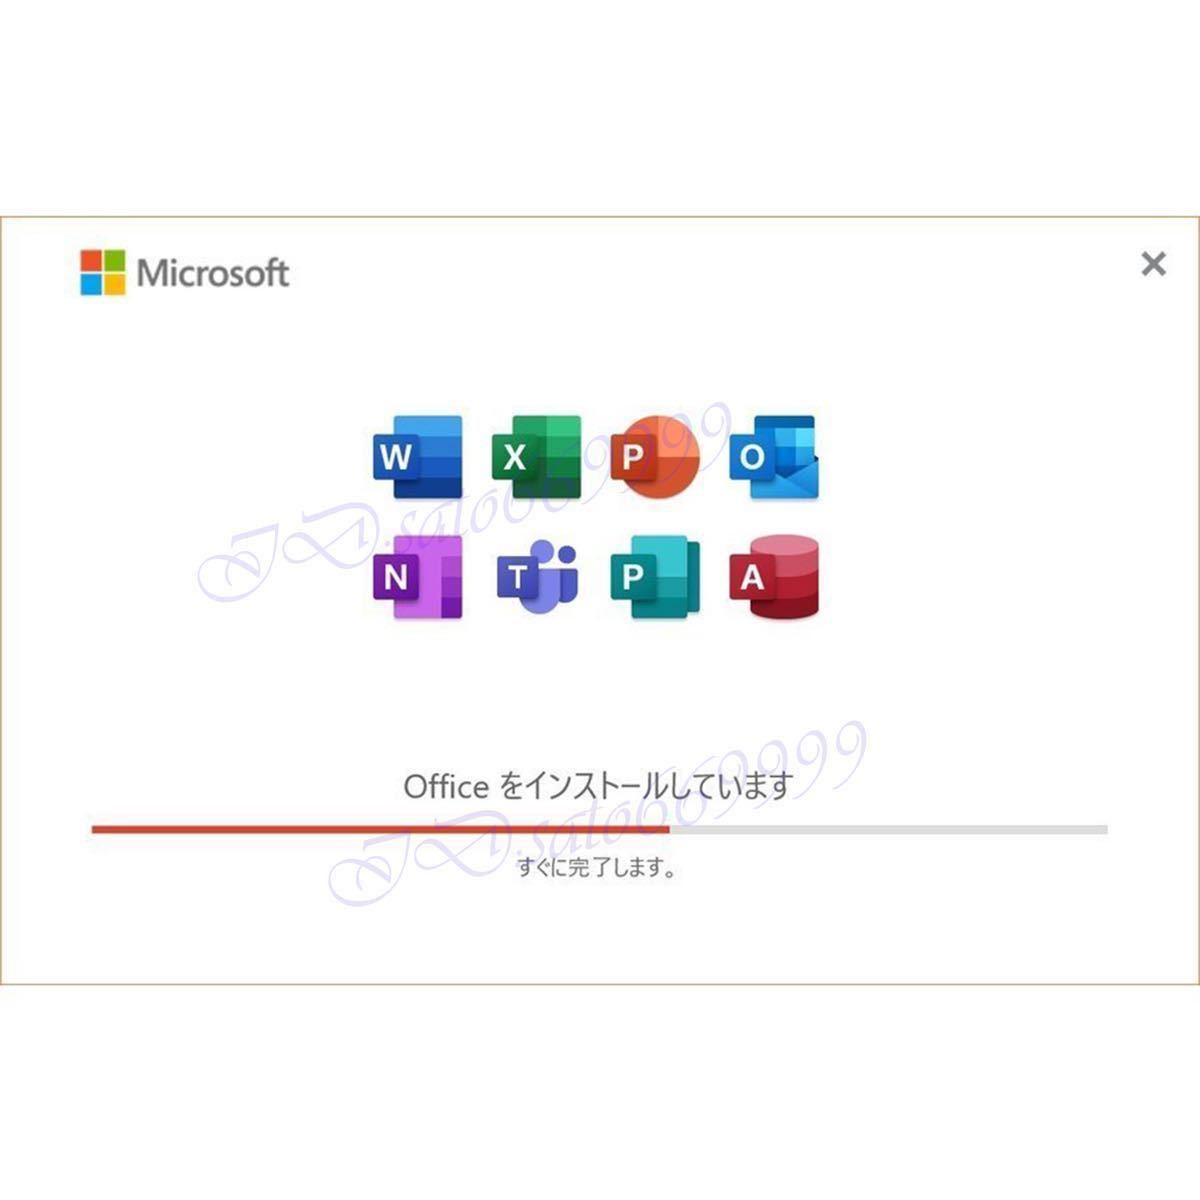 ★安心サポート★ Microsoft Office 2021 Professional Plus office2021 プロダクトキー Access Word Excel PowerPoin正規認証保証日本語2